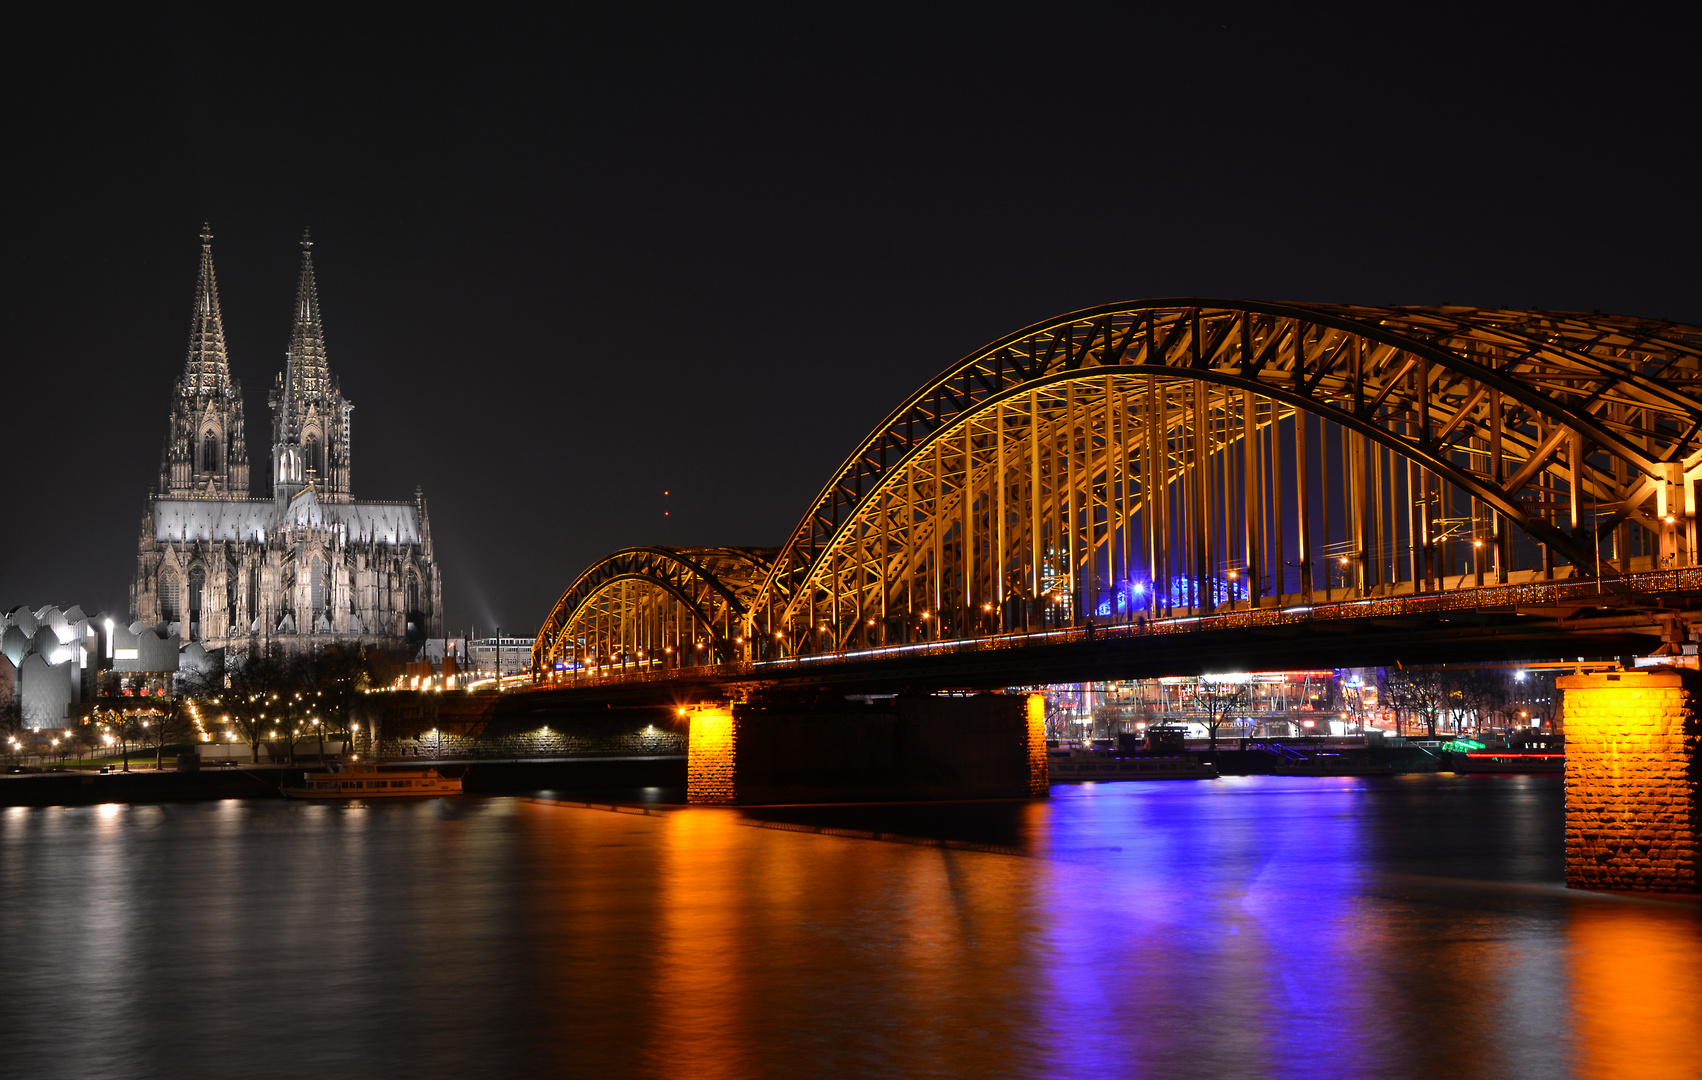 Dom zu Köln mit Hohenzollernbrücke - Ansicht 2